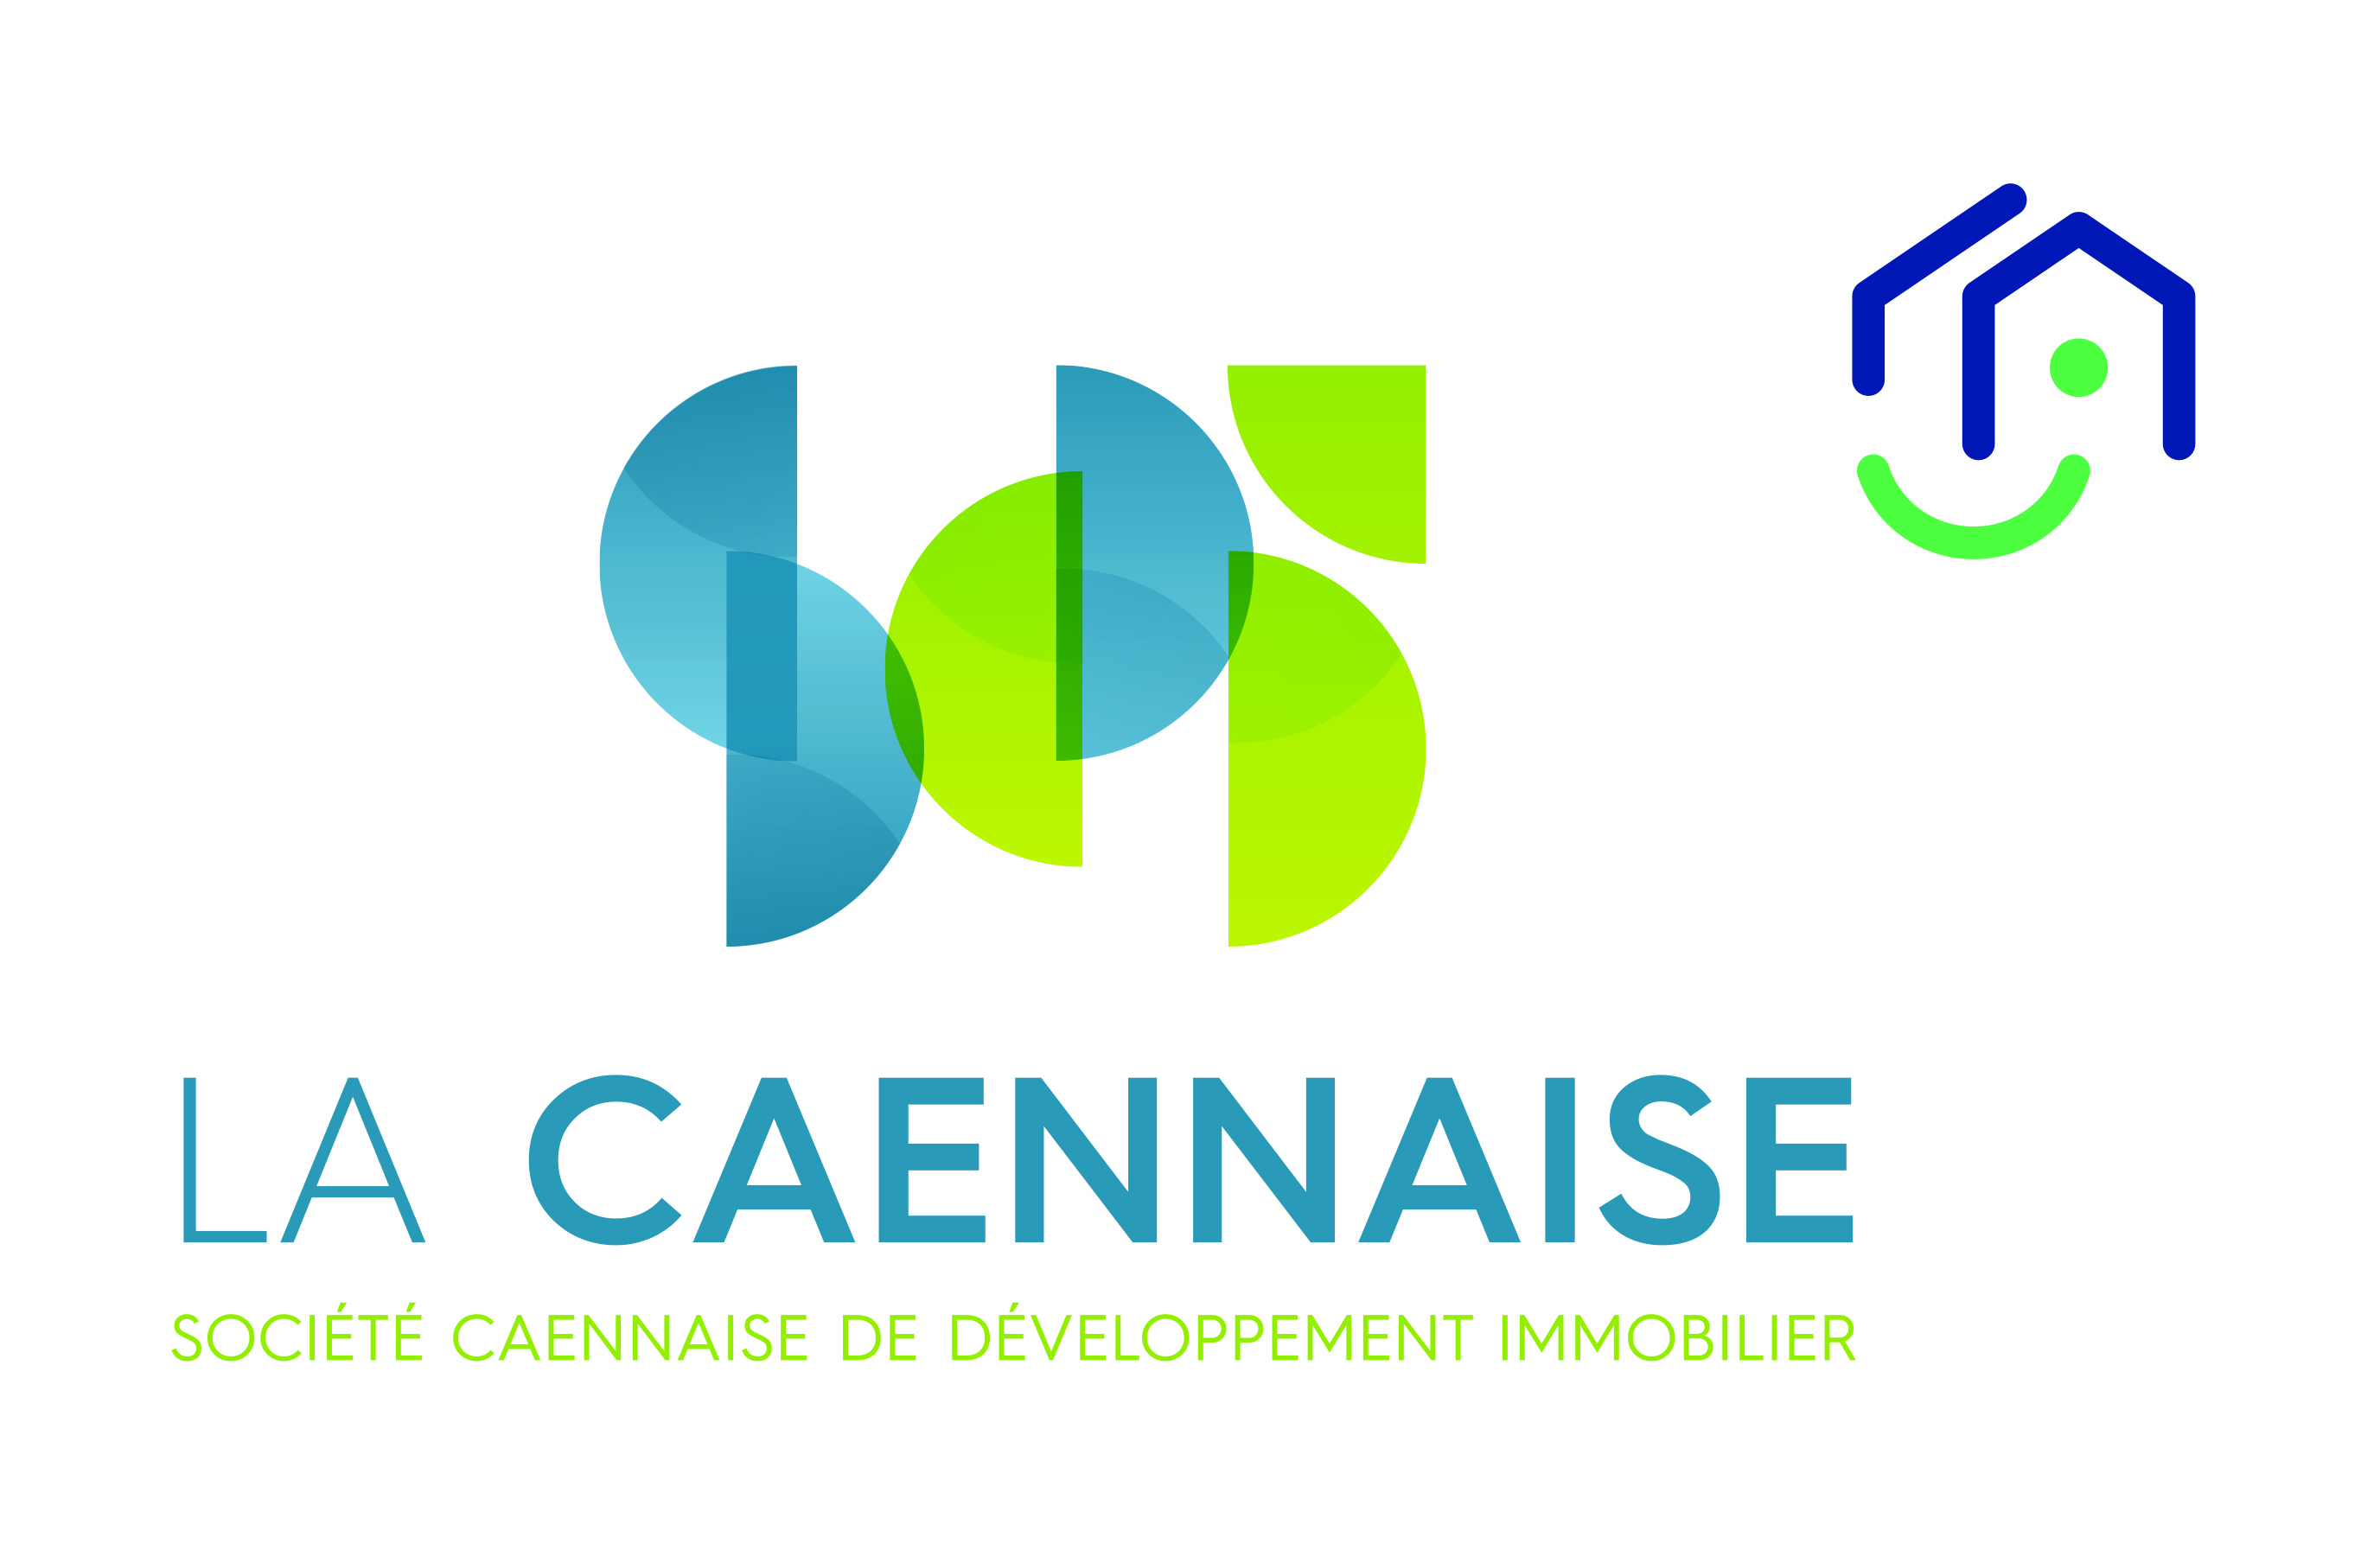 La Caennaise - Société Caennaise de Développement Immobilier